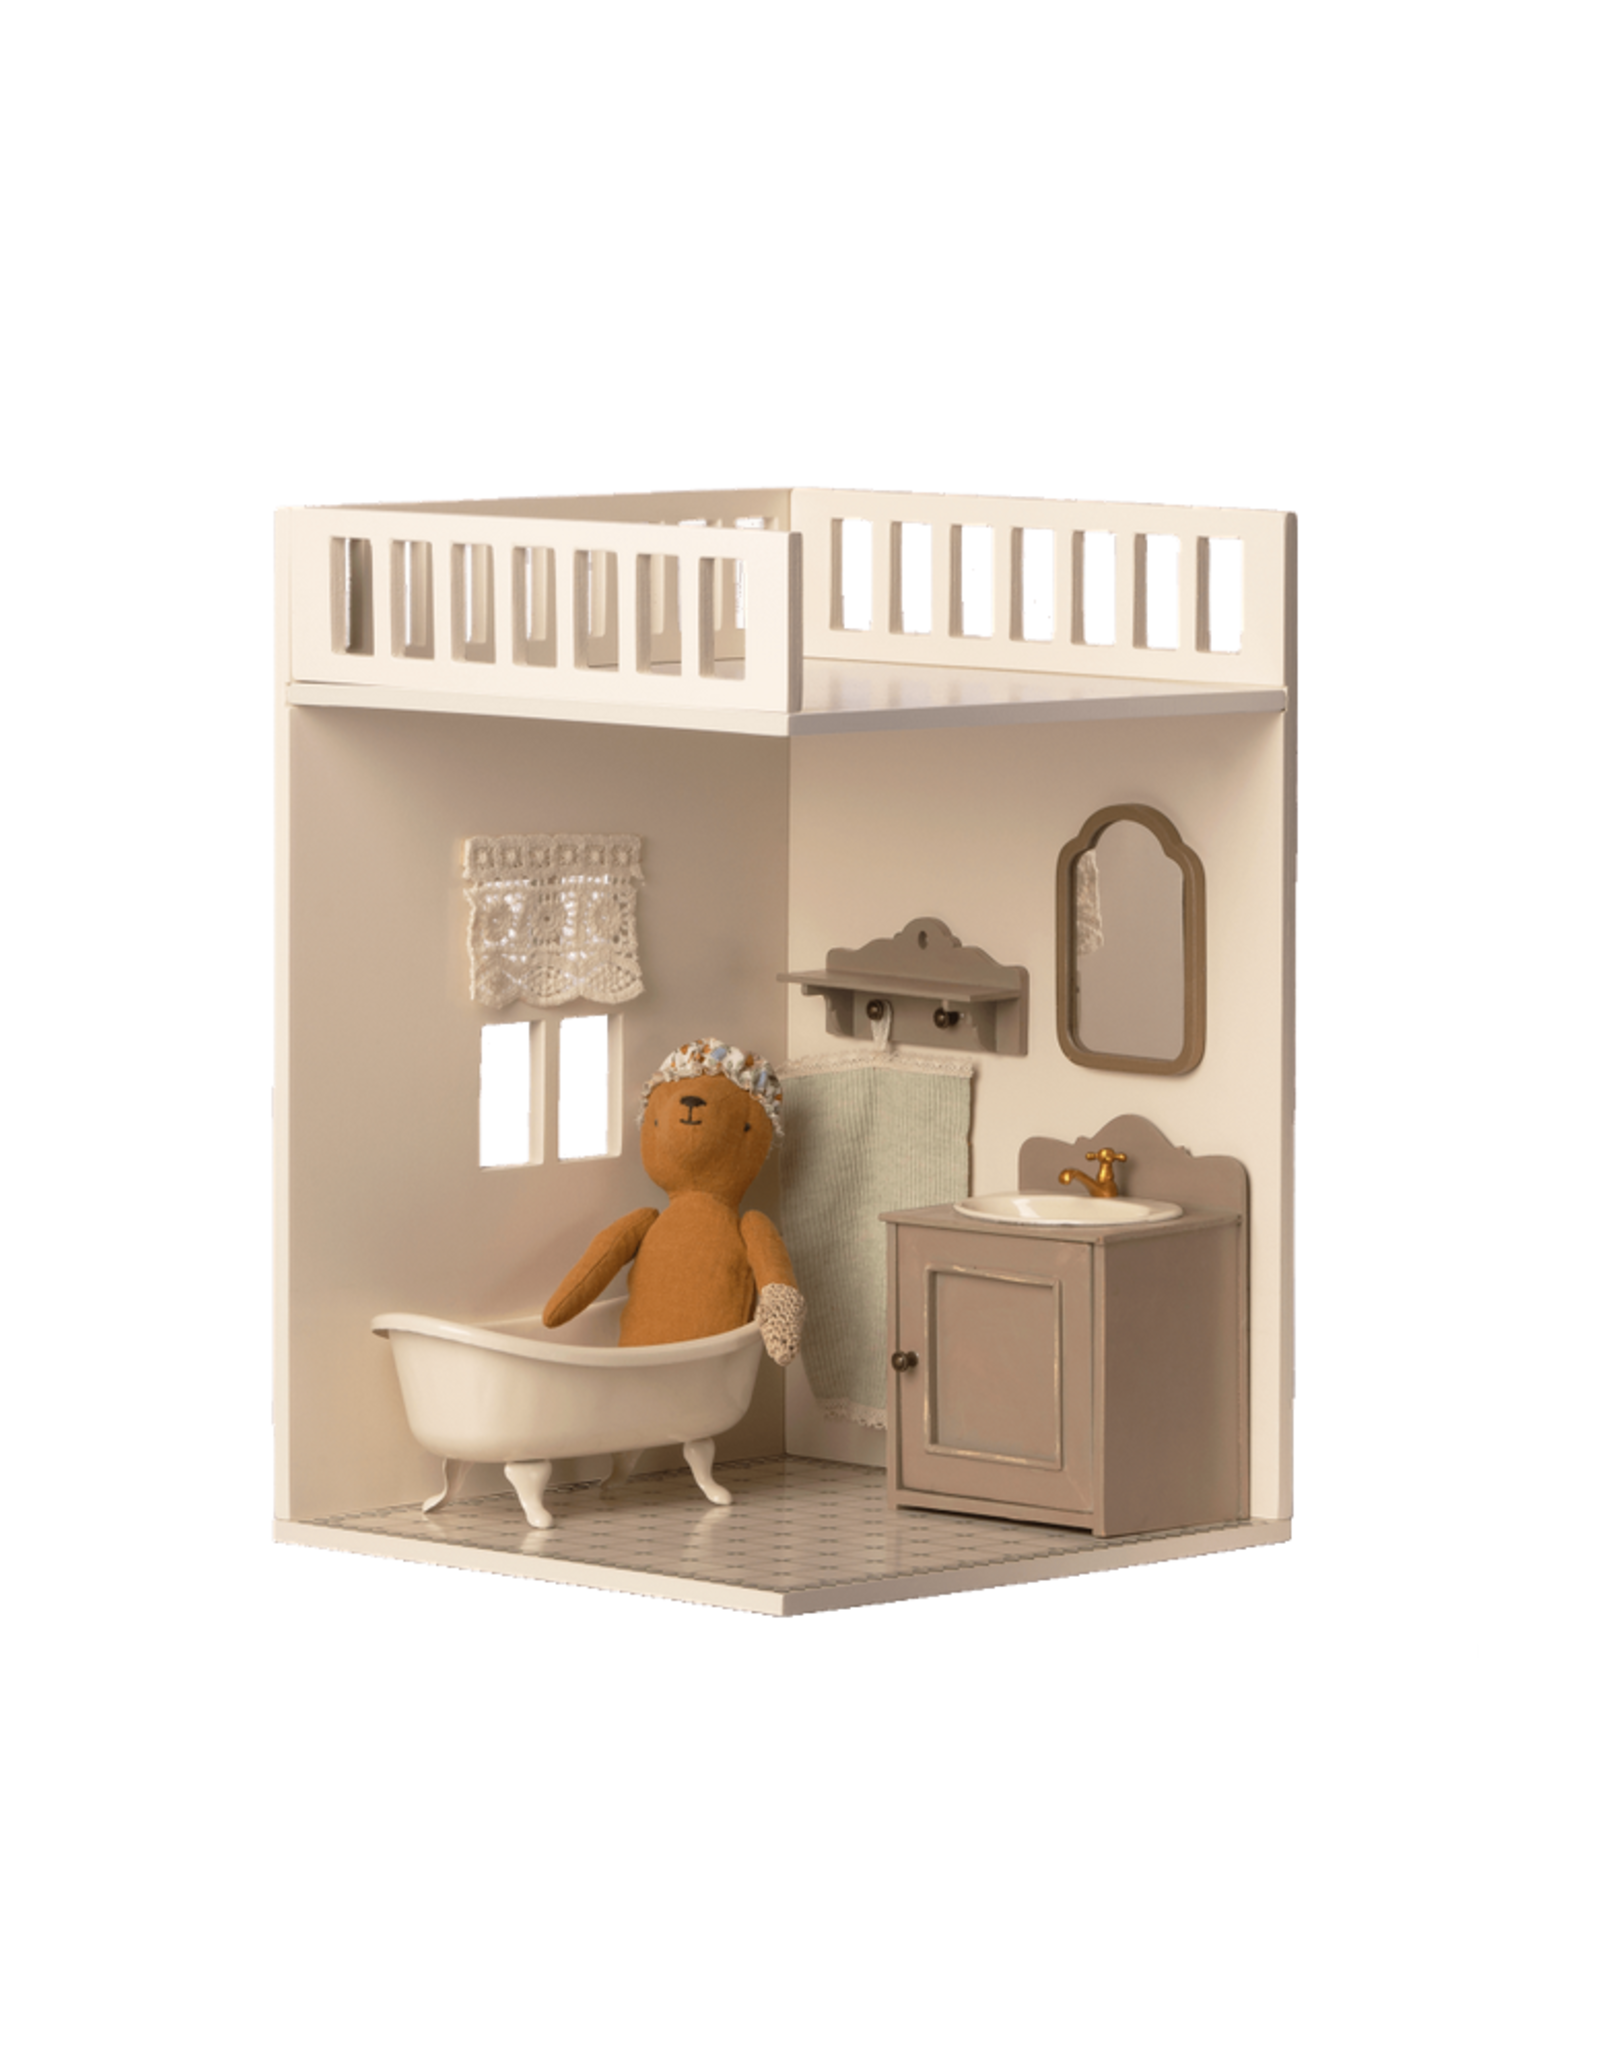 Maileg House of Miniature Bathroom Room